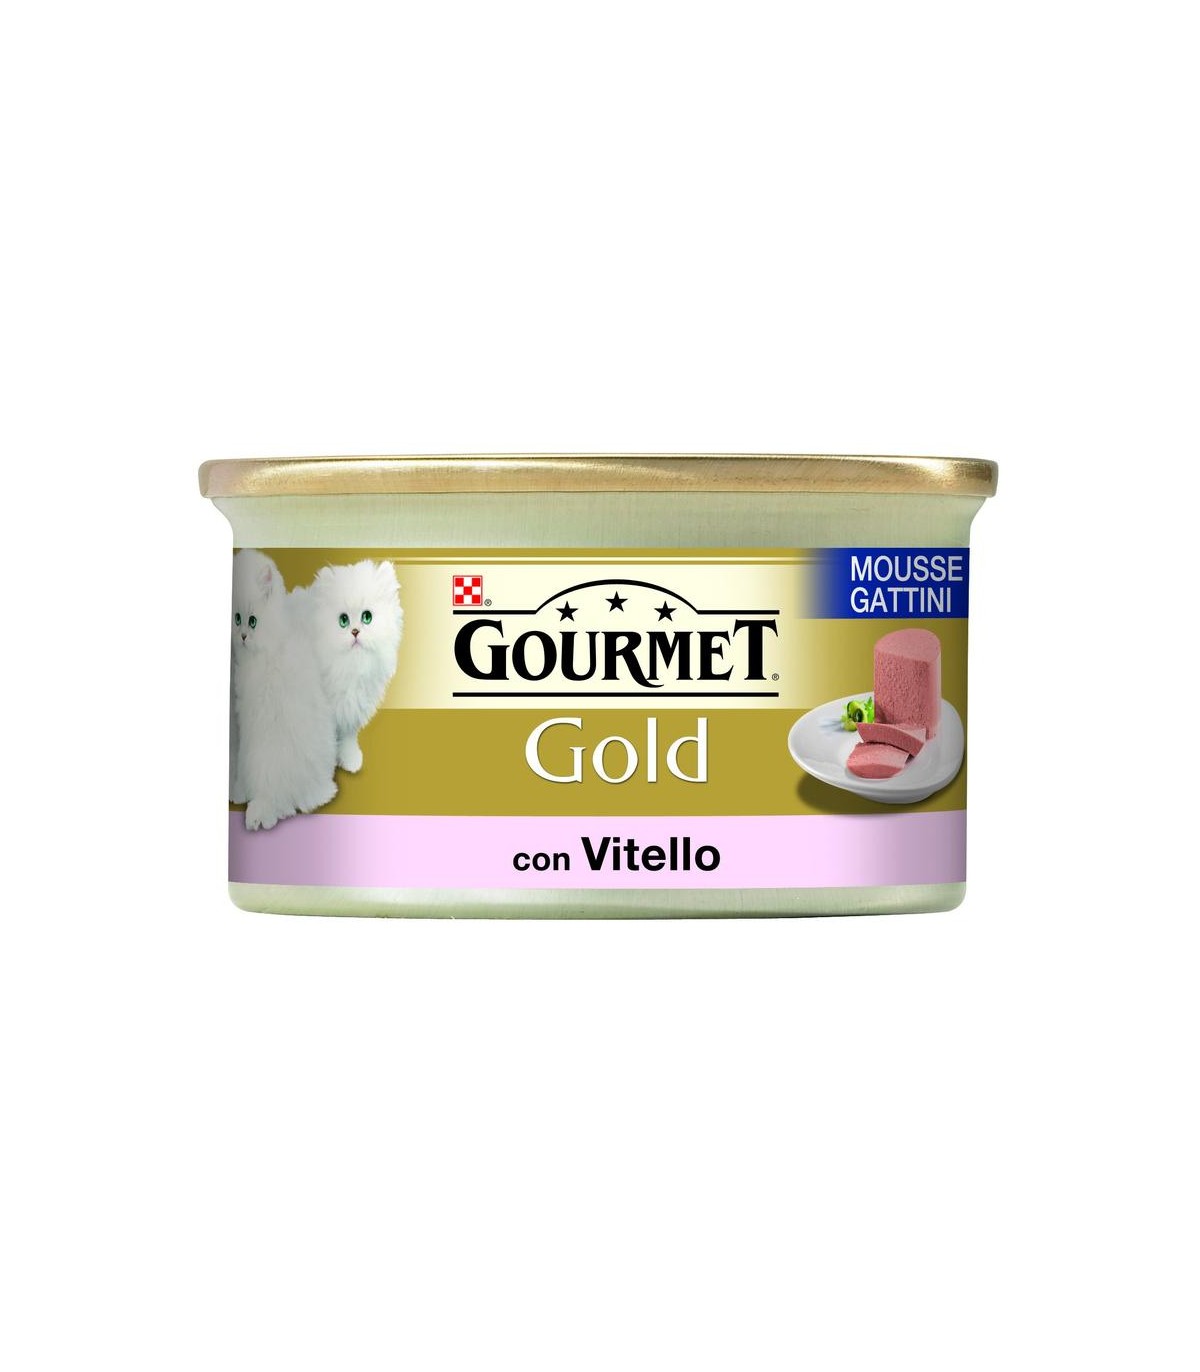 Image of Gourmet Gold Mousse Gattini con Vitello - 85GR